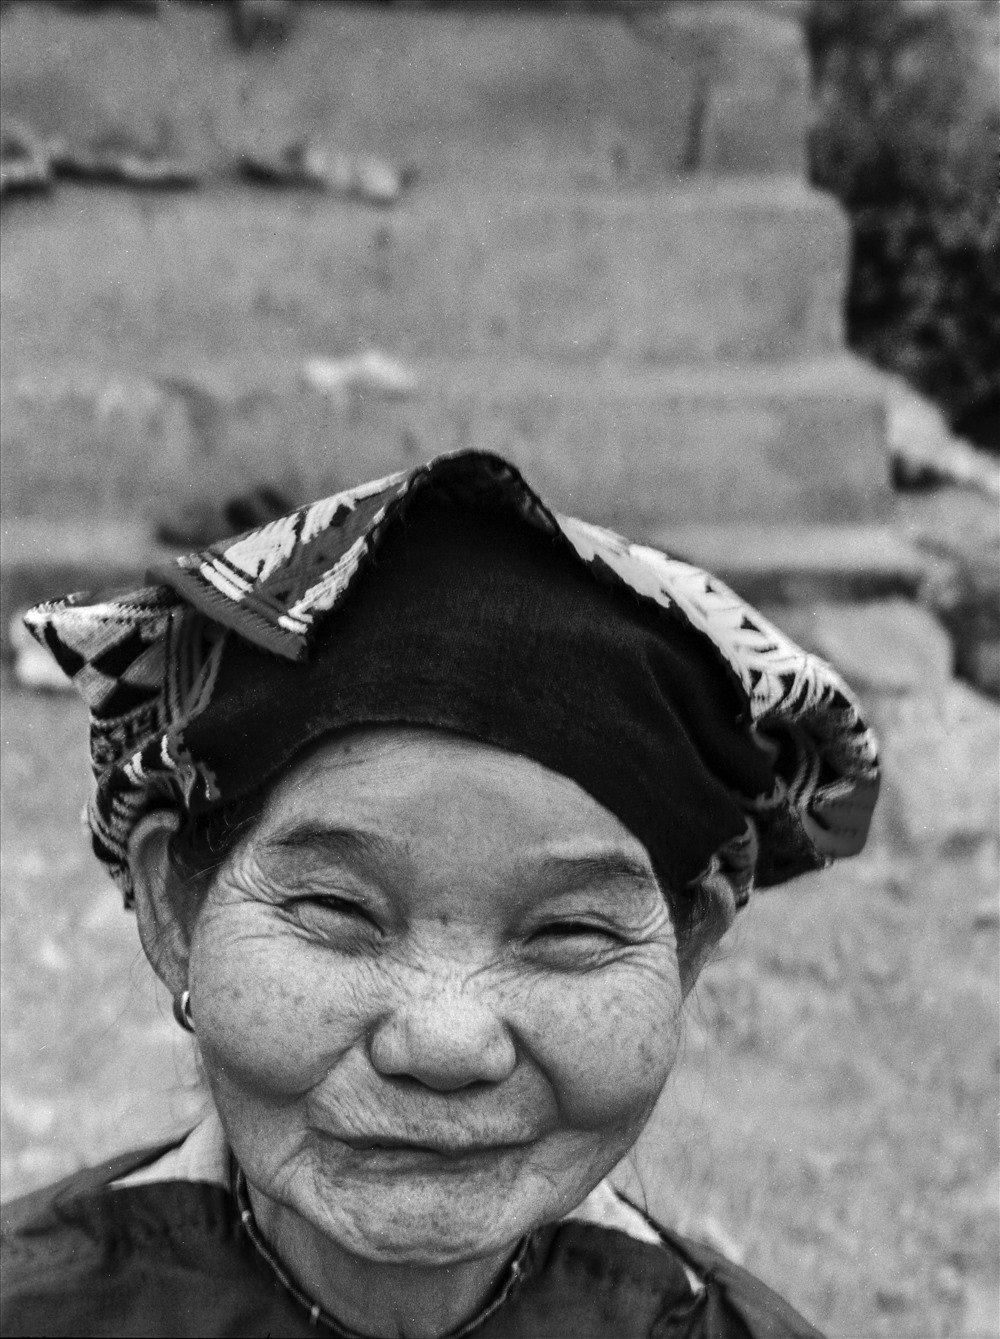 Một cụ già người dân tộc Mường ở Bá Thước, Thanh Hóa.
Cụ nói, cụ chưa từng được chụp ảnh lần nào trong đời.